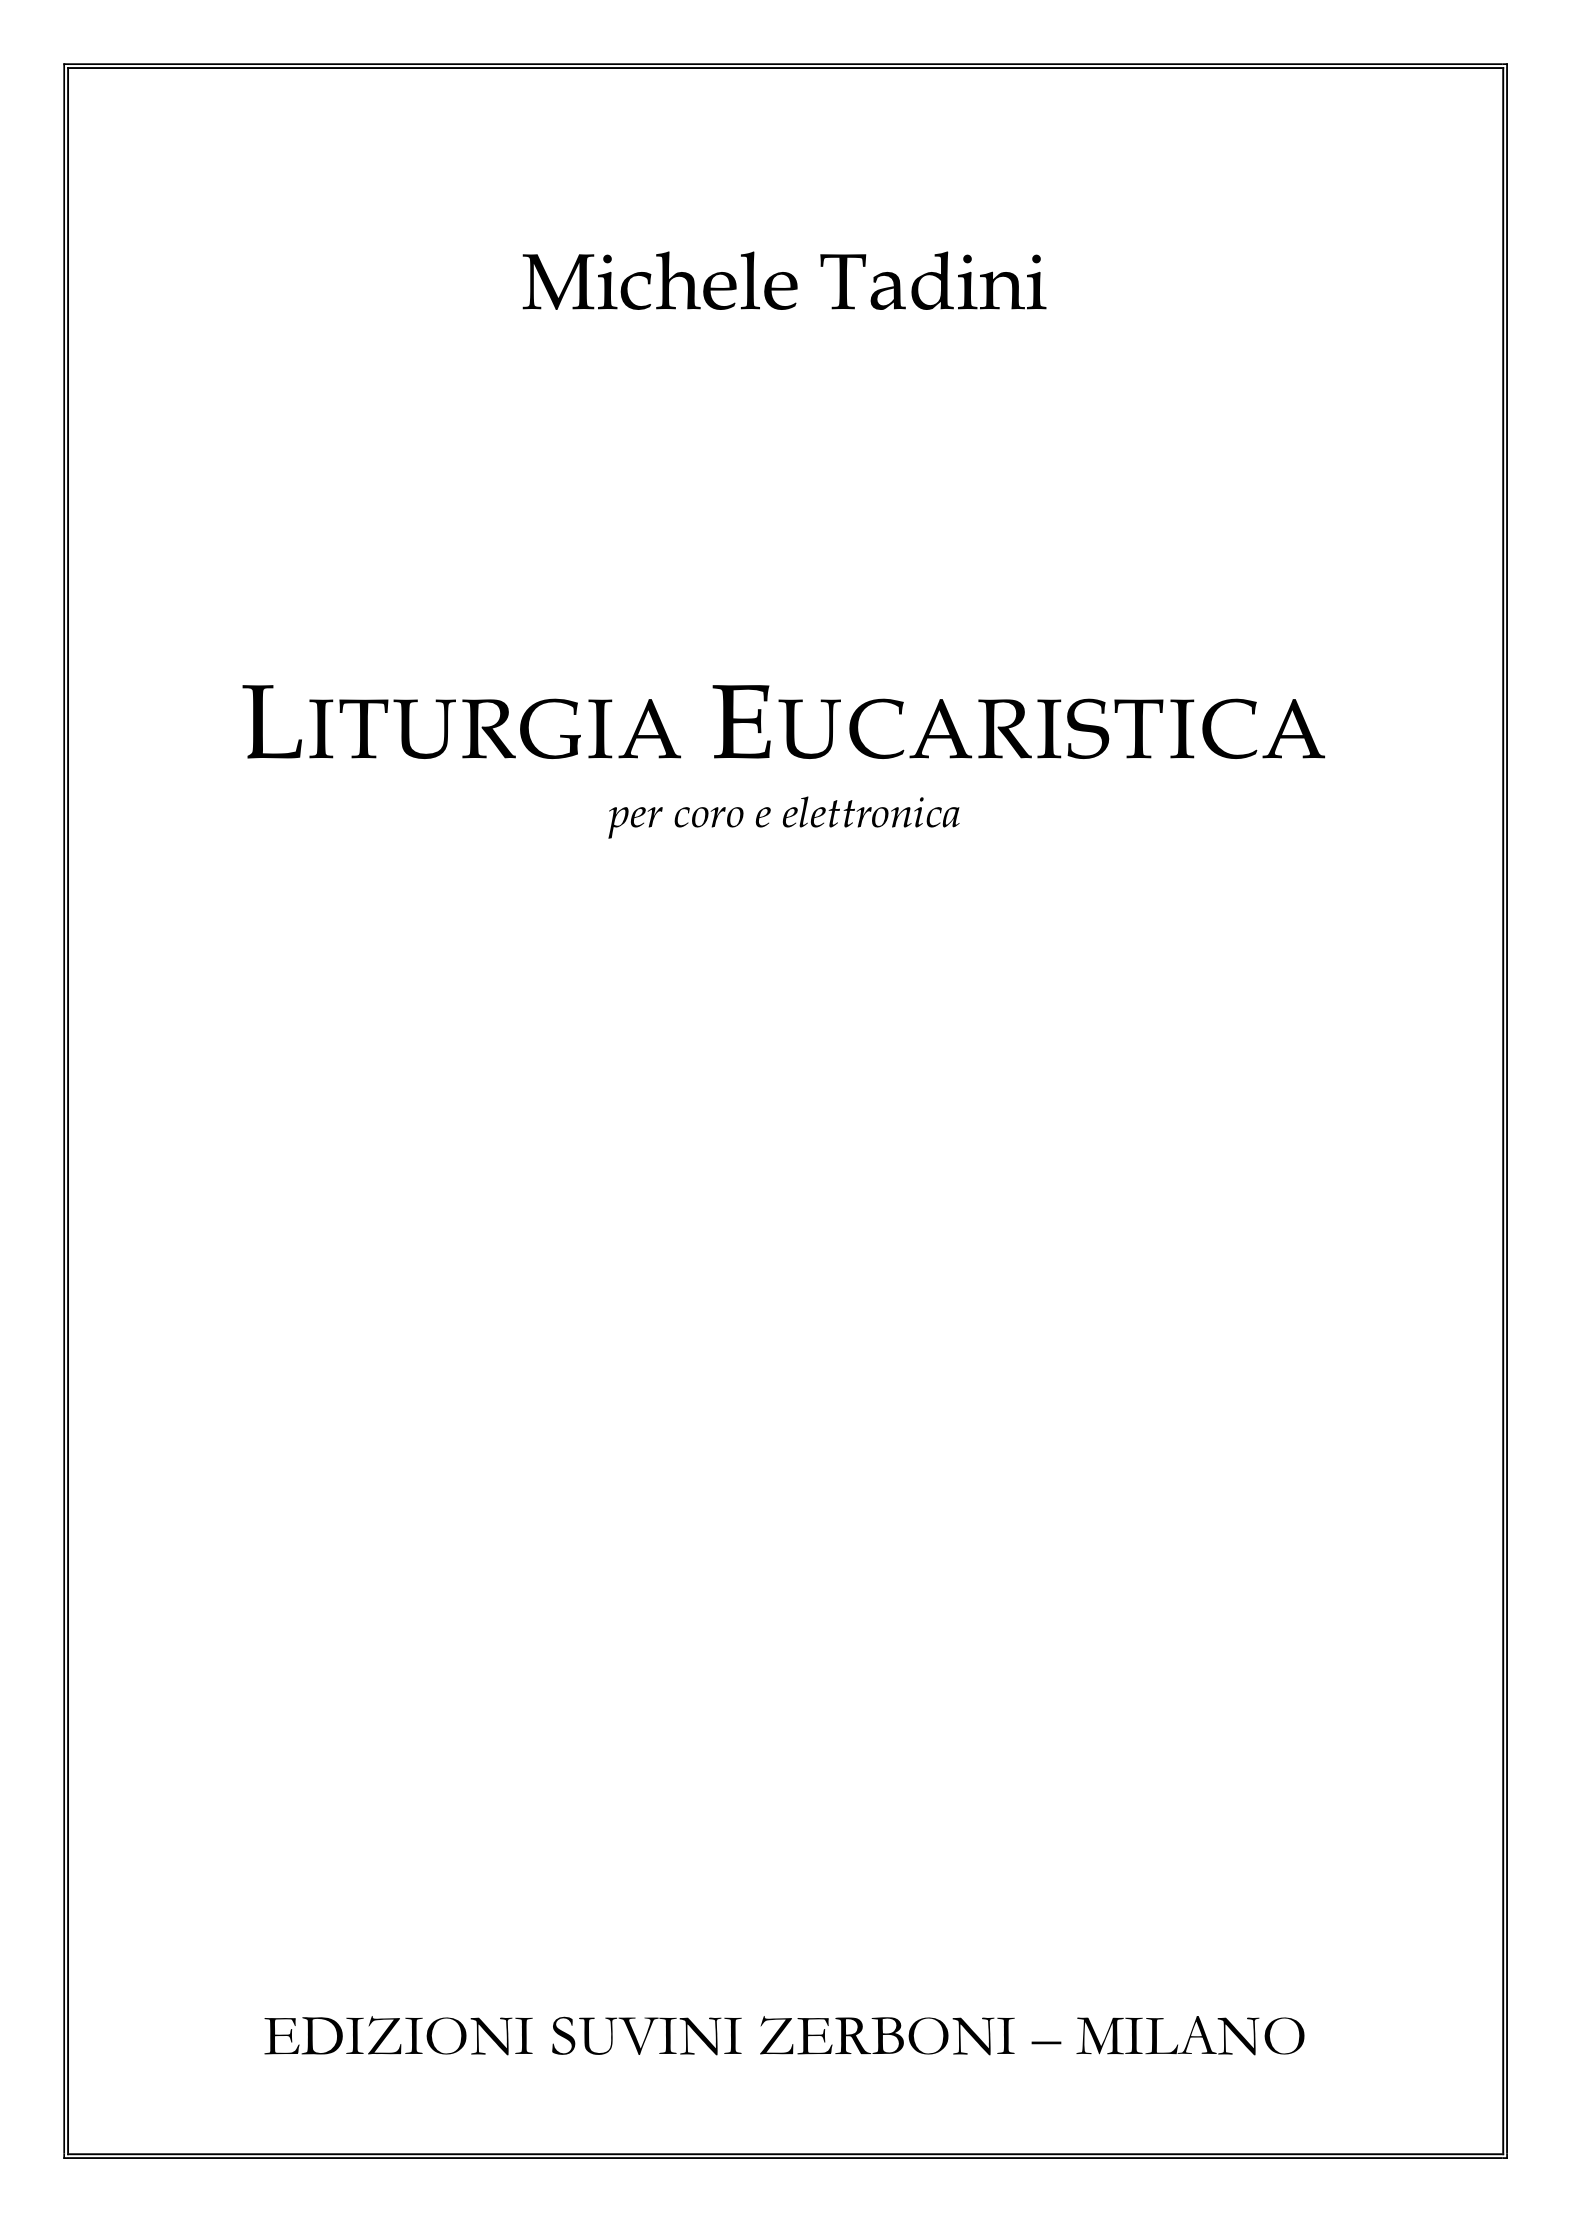 Liturgia eucaristica_Tadini 1